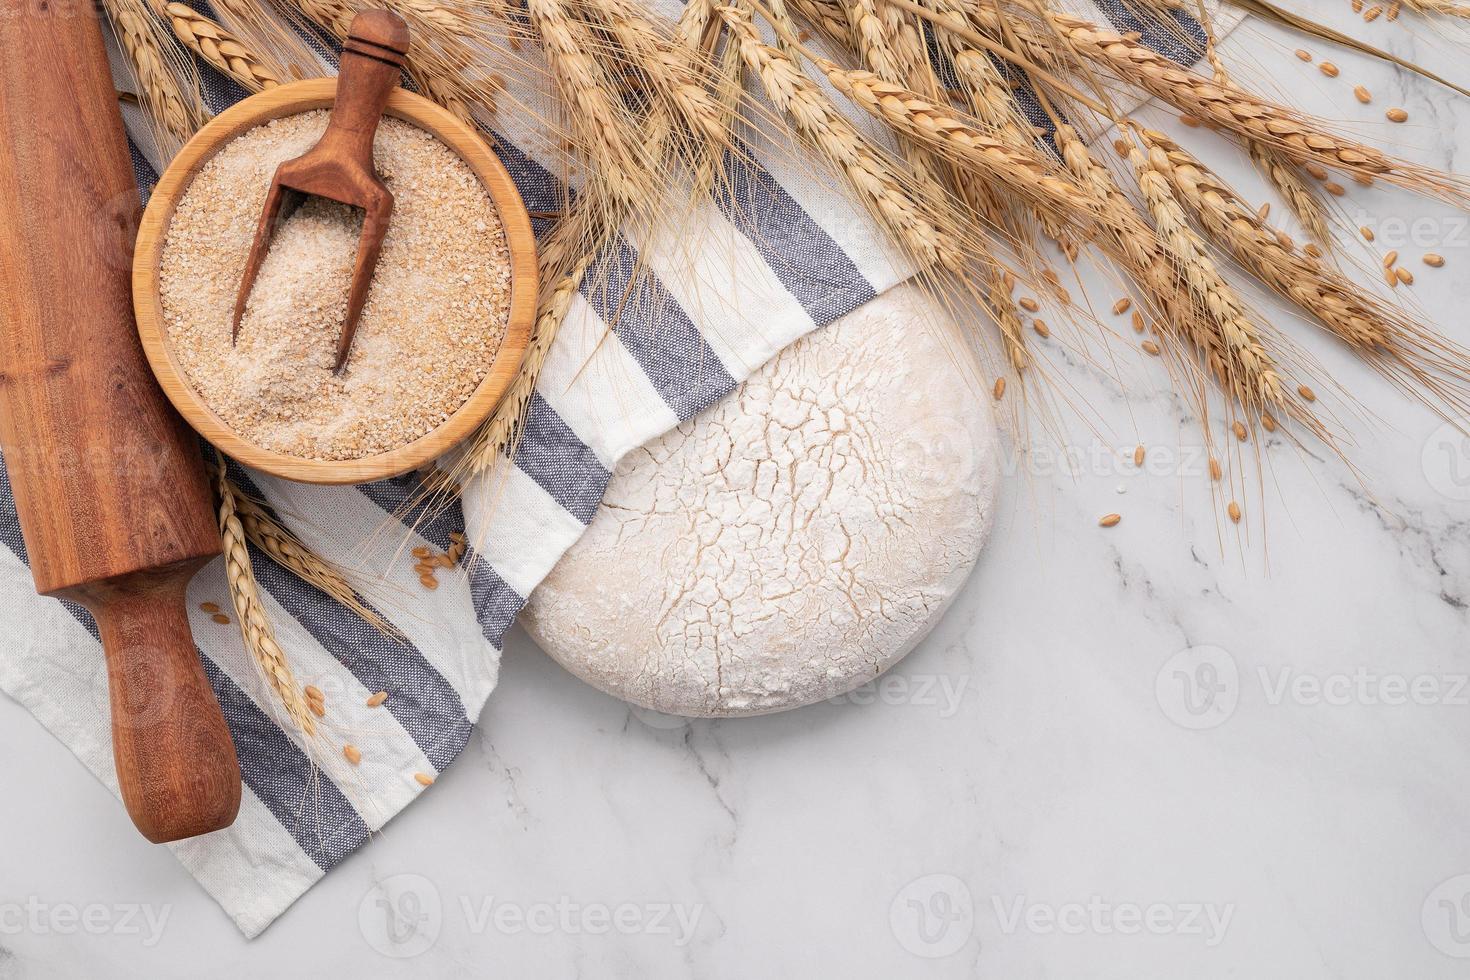 masa de levadura casera fresca descansando sobre una mesa de mármol con espigas de trigo y rodillo. foto